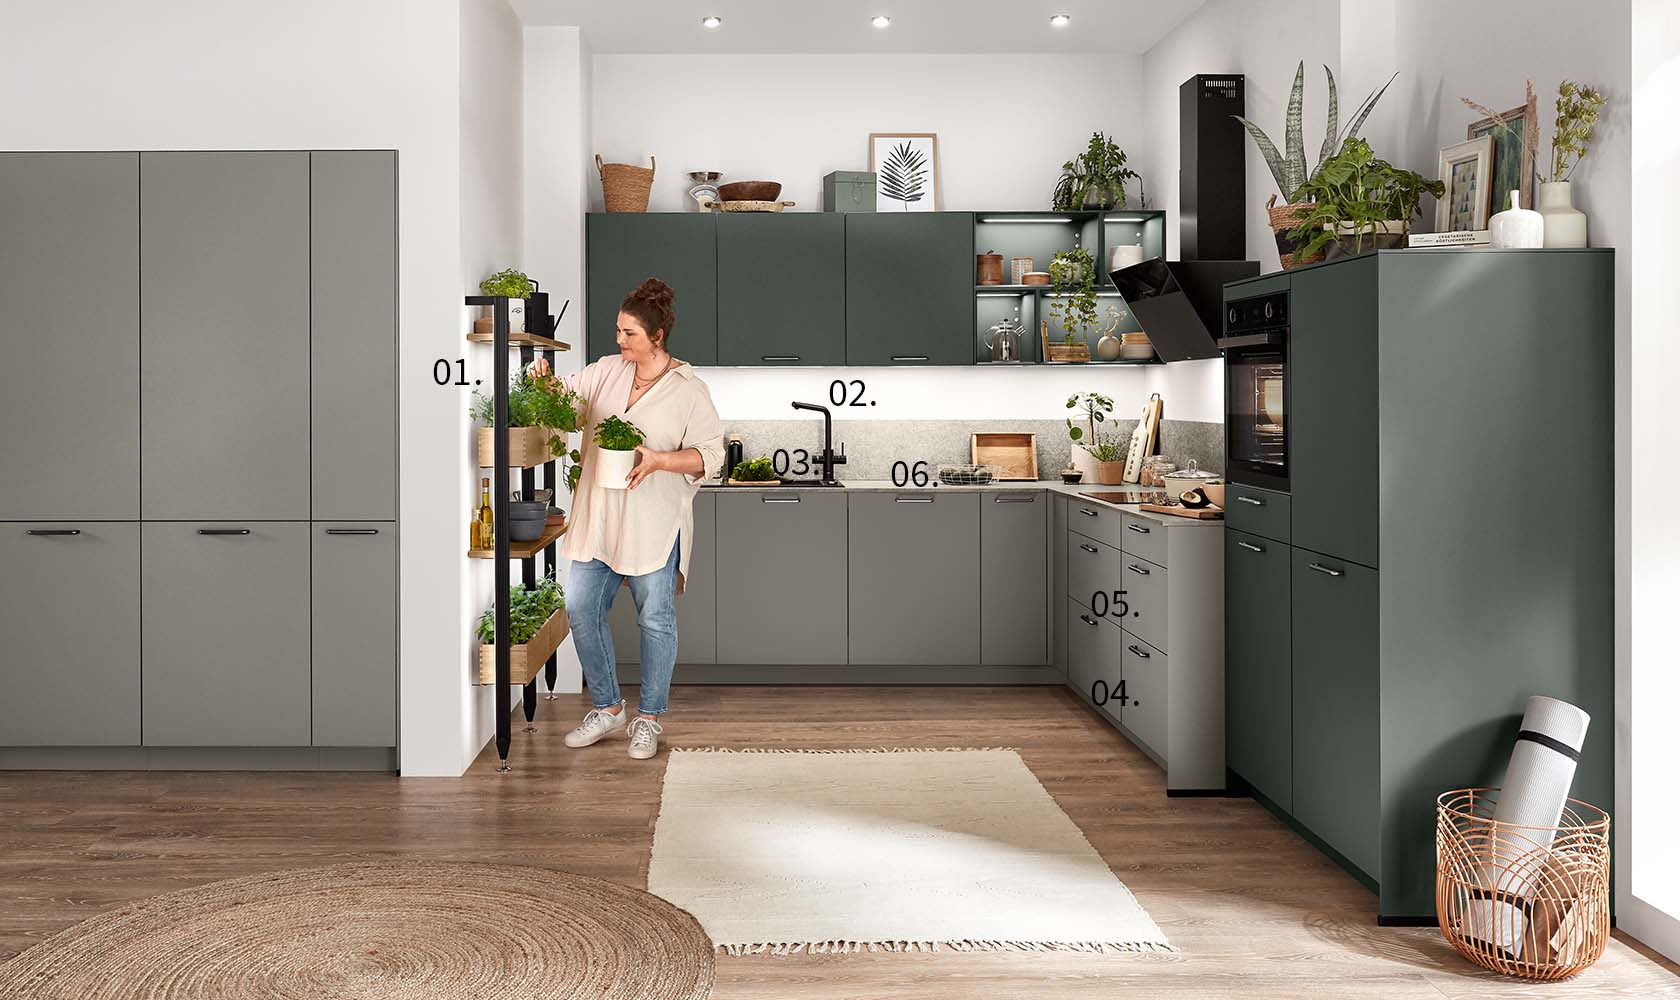 Una donna si trova in una cucina moderna con indicatori numerati che evidenziano caratteristiche come armadi, elettrodomestici e piante decorative.